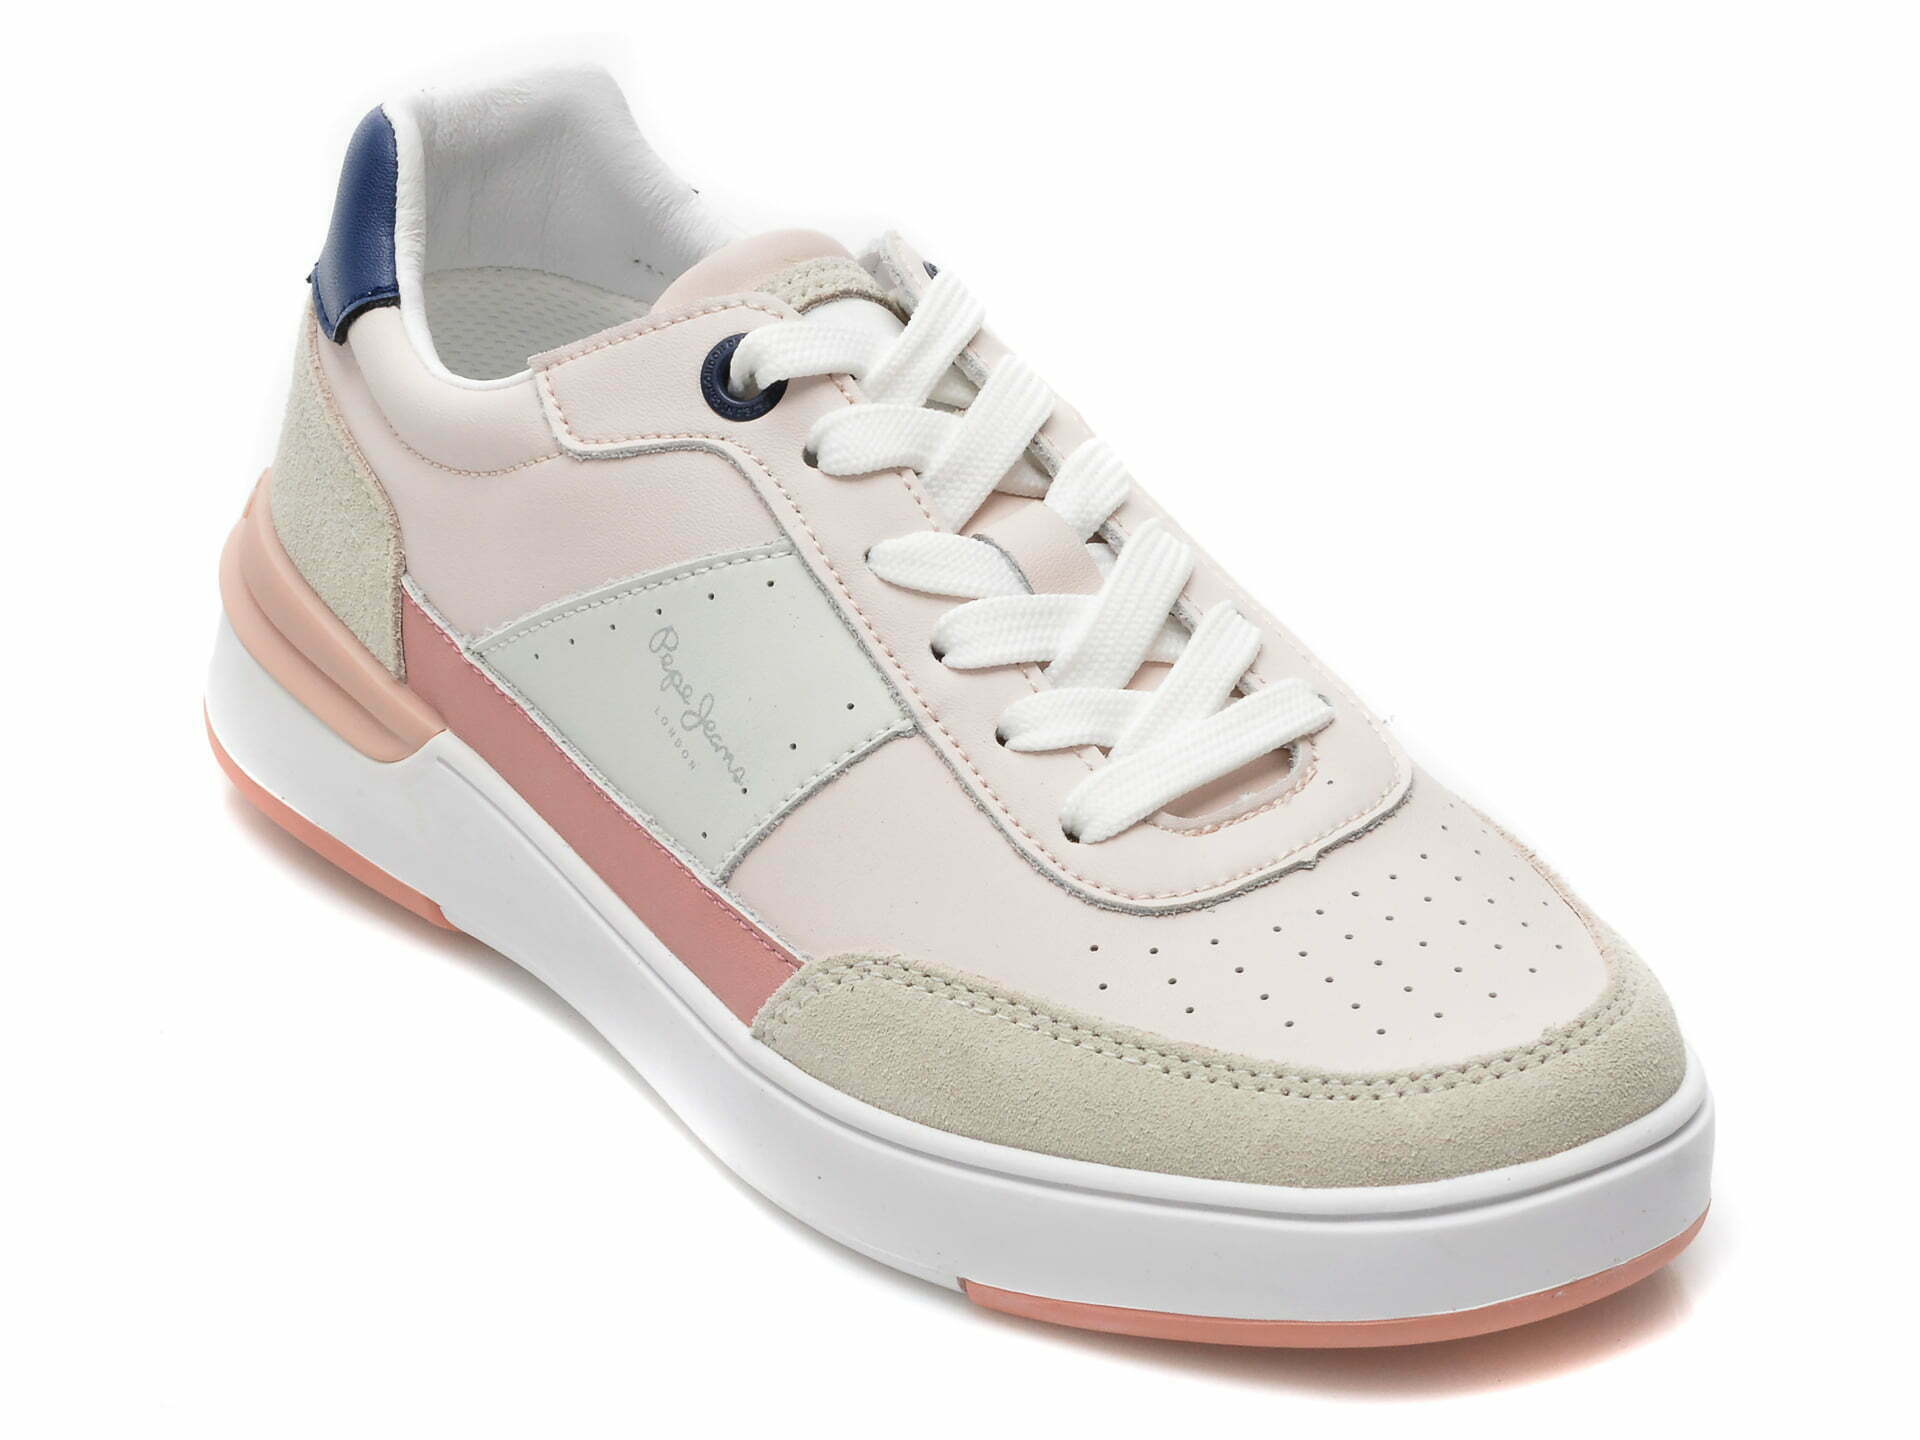 Comandă Încălțăminte Damă, la Reducere  Pantofi sport PEPE JEANS roz, LS31350, din piele naturala Branduri de top ✓